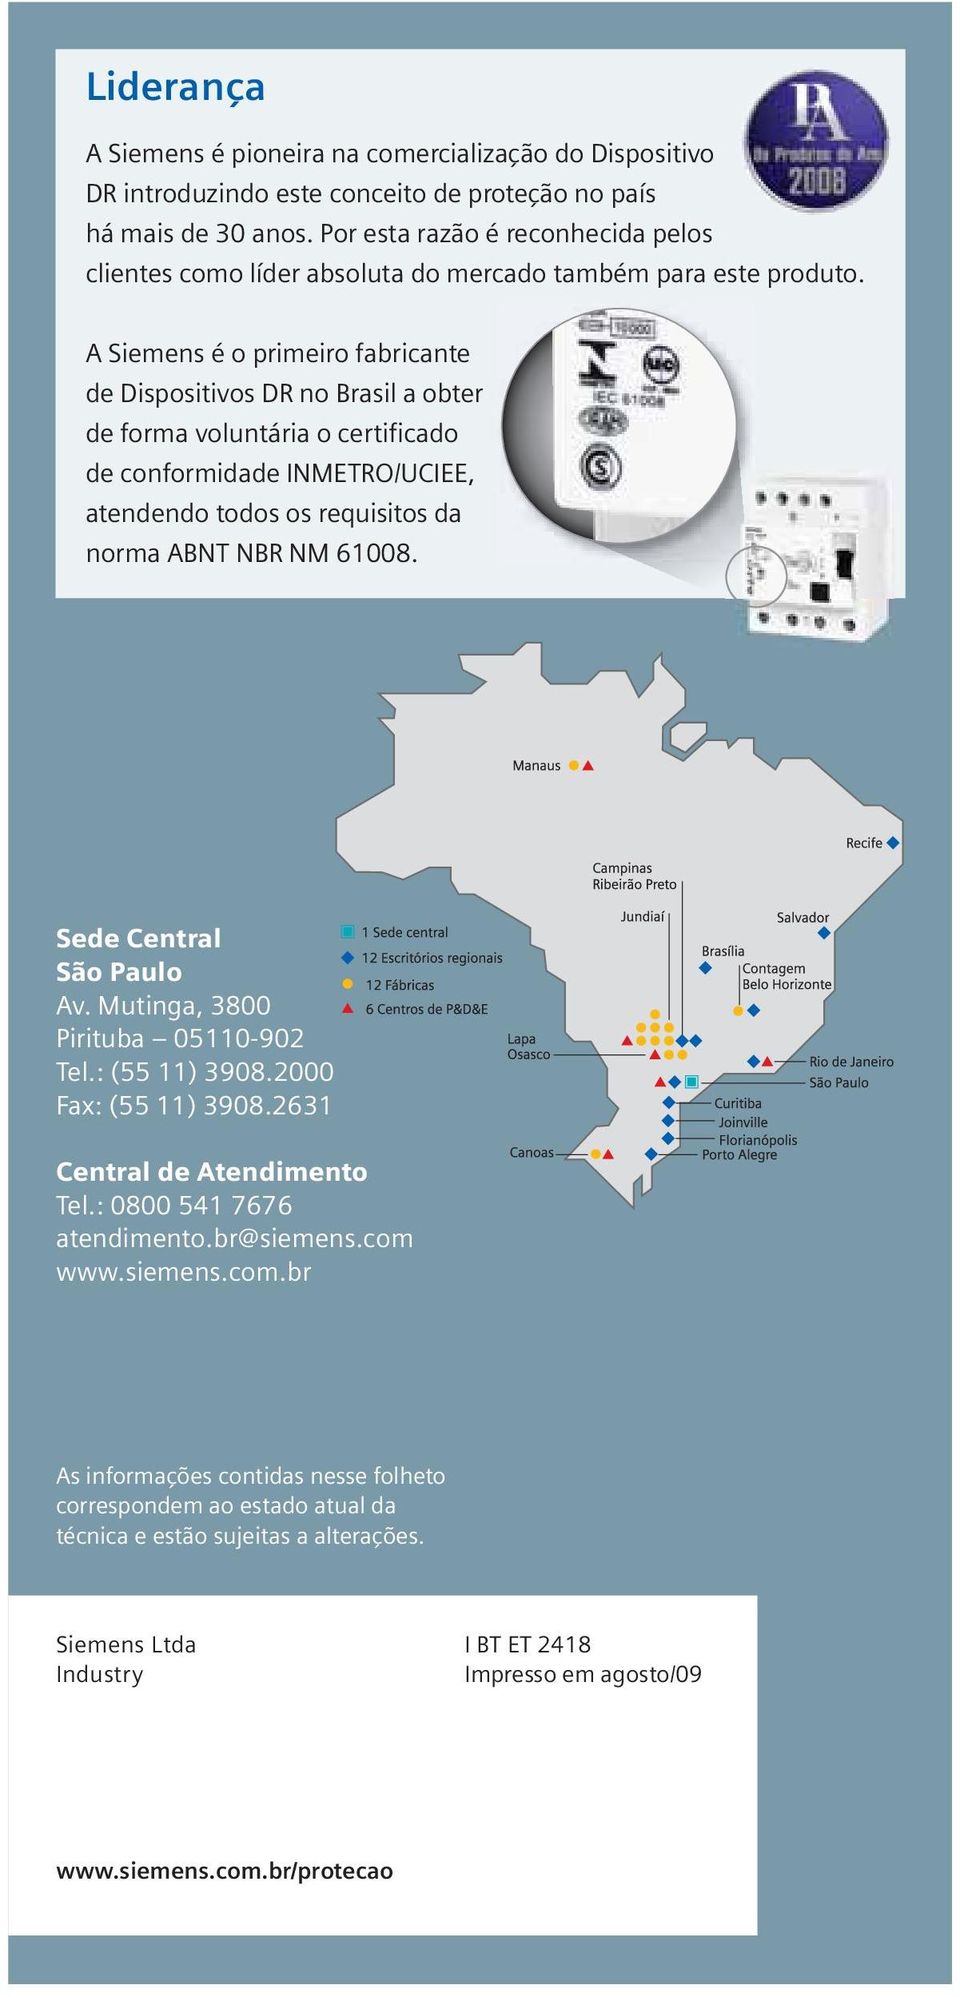 A Siemens é o primeiro fabricante de Dispositivos D no Brasil a obter de forma voluntária o certificado de conformidade IMETO/UCIEE, atendendo todos os requisitos da norma ABT B M 61008.